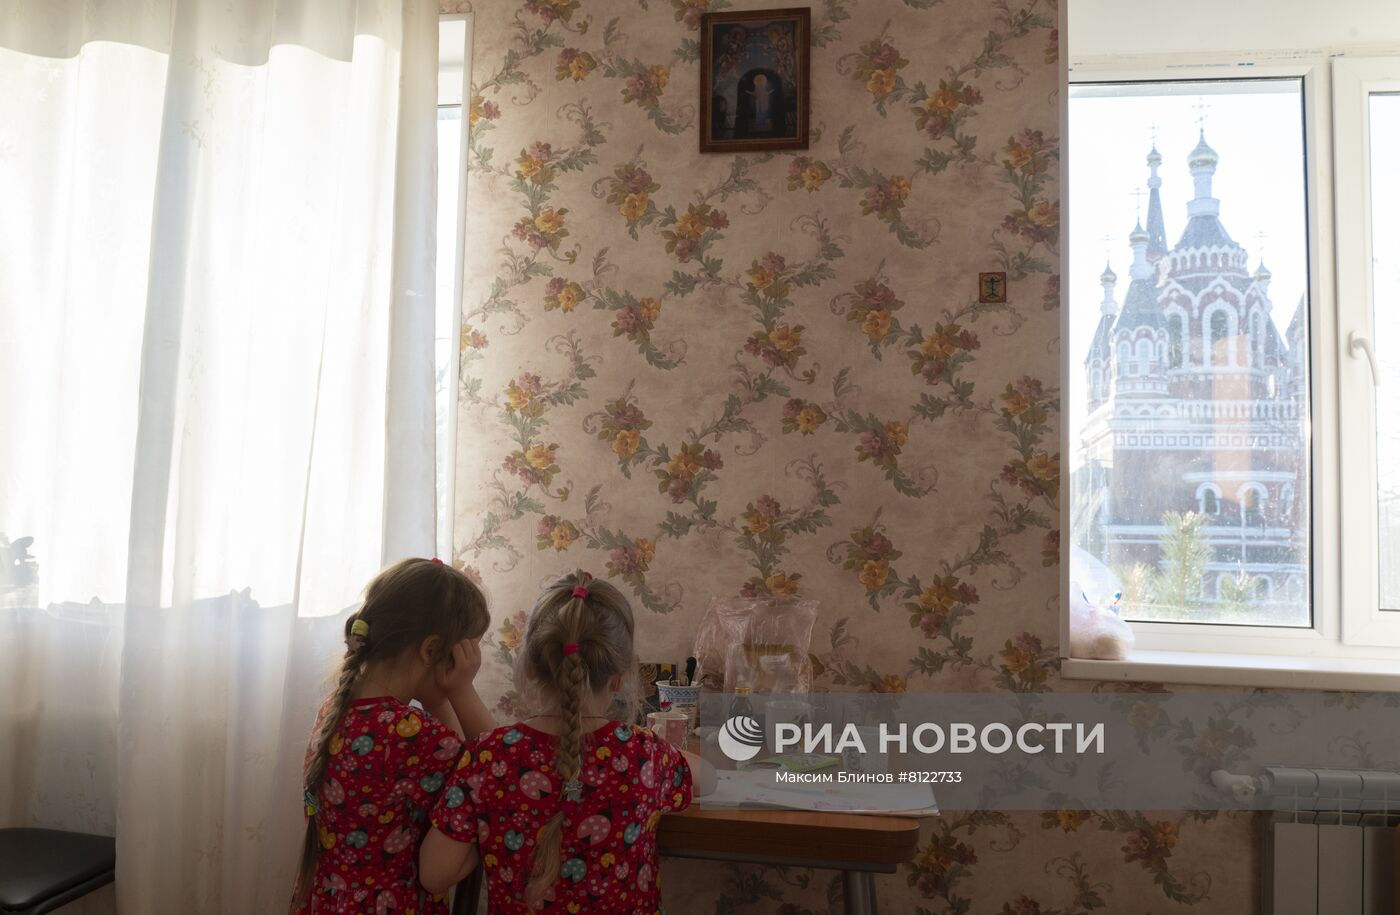 Размещение эвакуированных жителей Донбасса в православном приюте